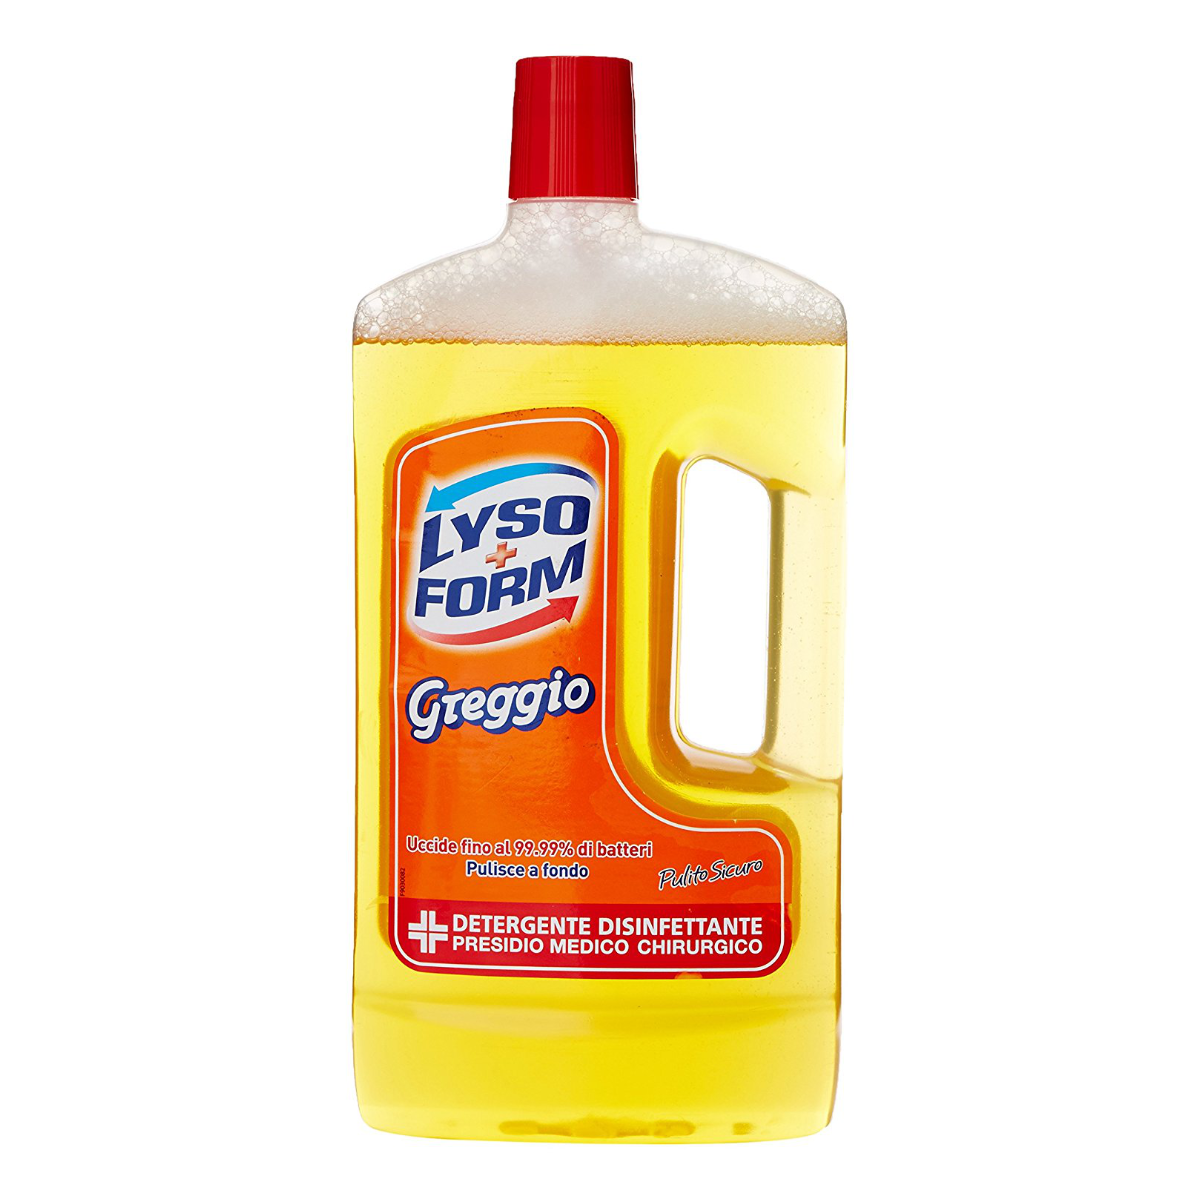 detergente-disinfettante-greggio-lysoform-1-lt-1